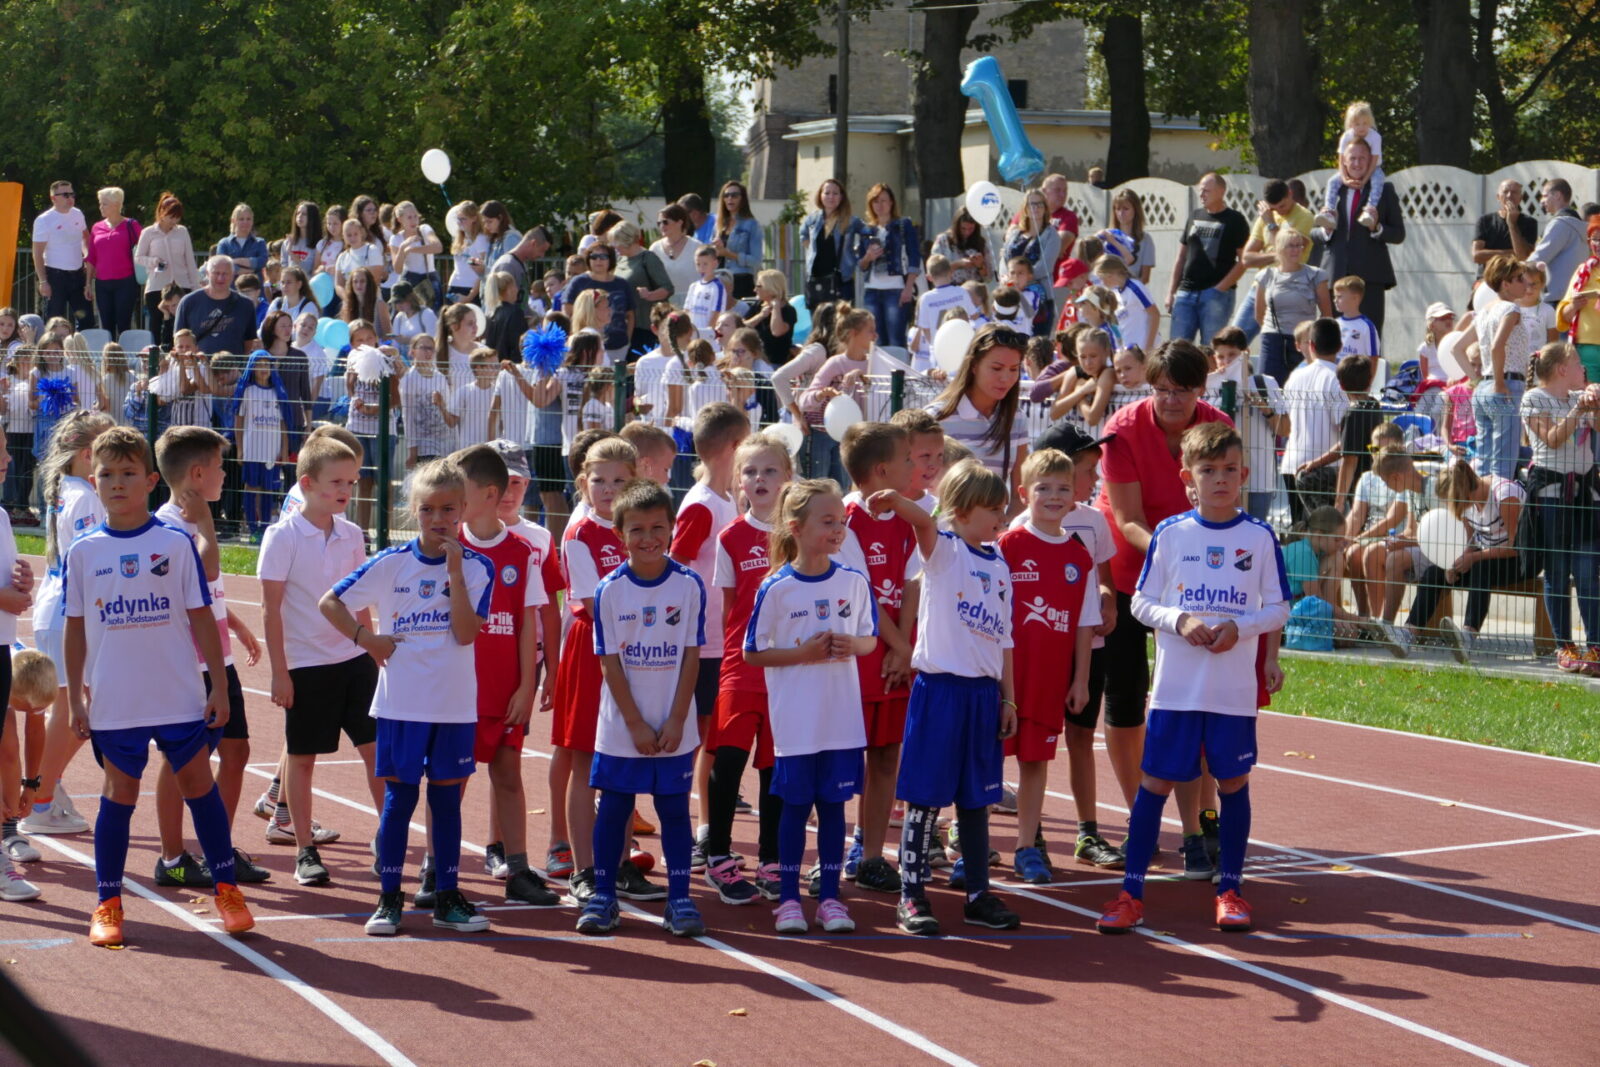 Zawody Lekkoatletyczne dla dzieci z okazji otwarcia Stadionu Miejskiego w Międzyrzeczu.